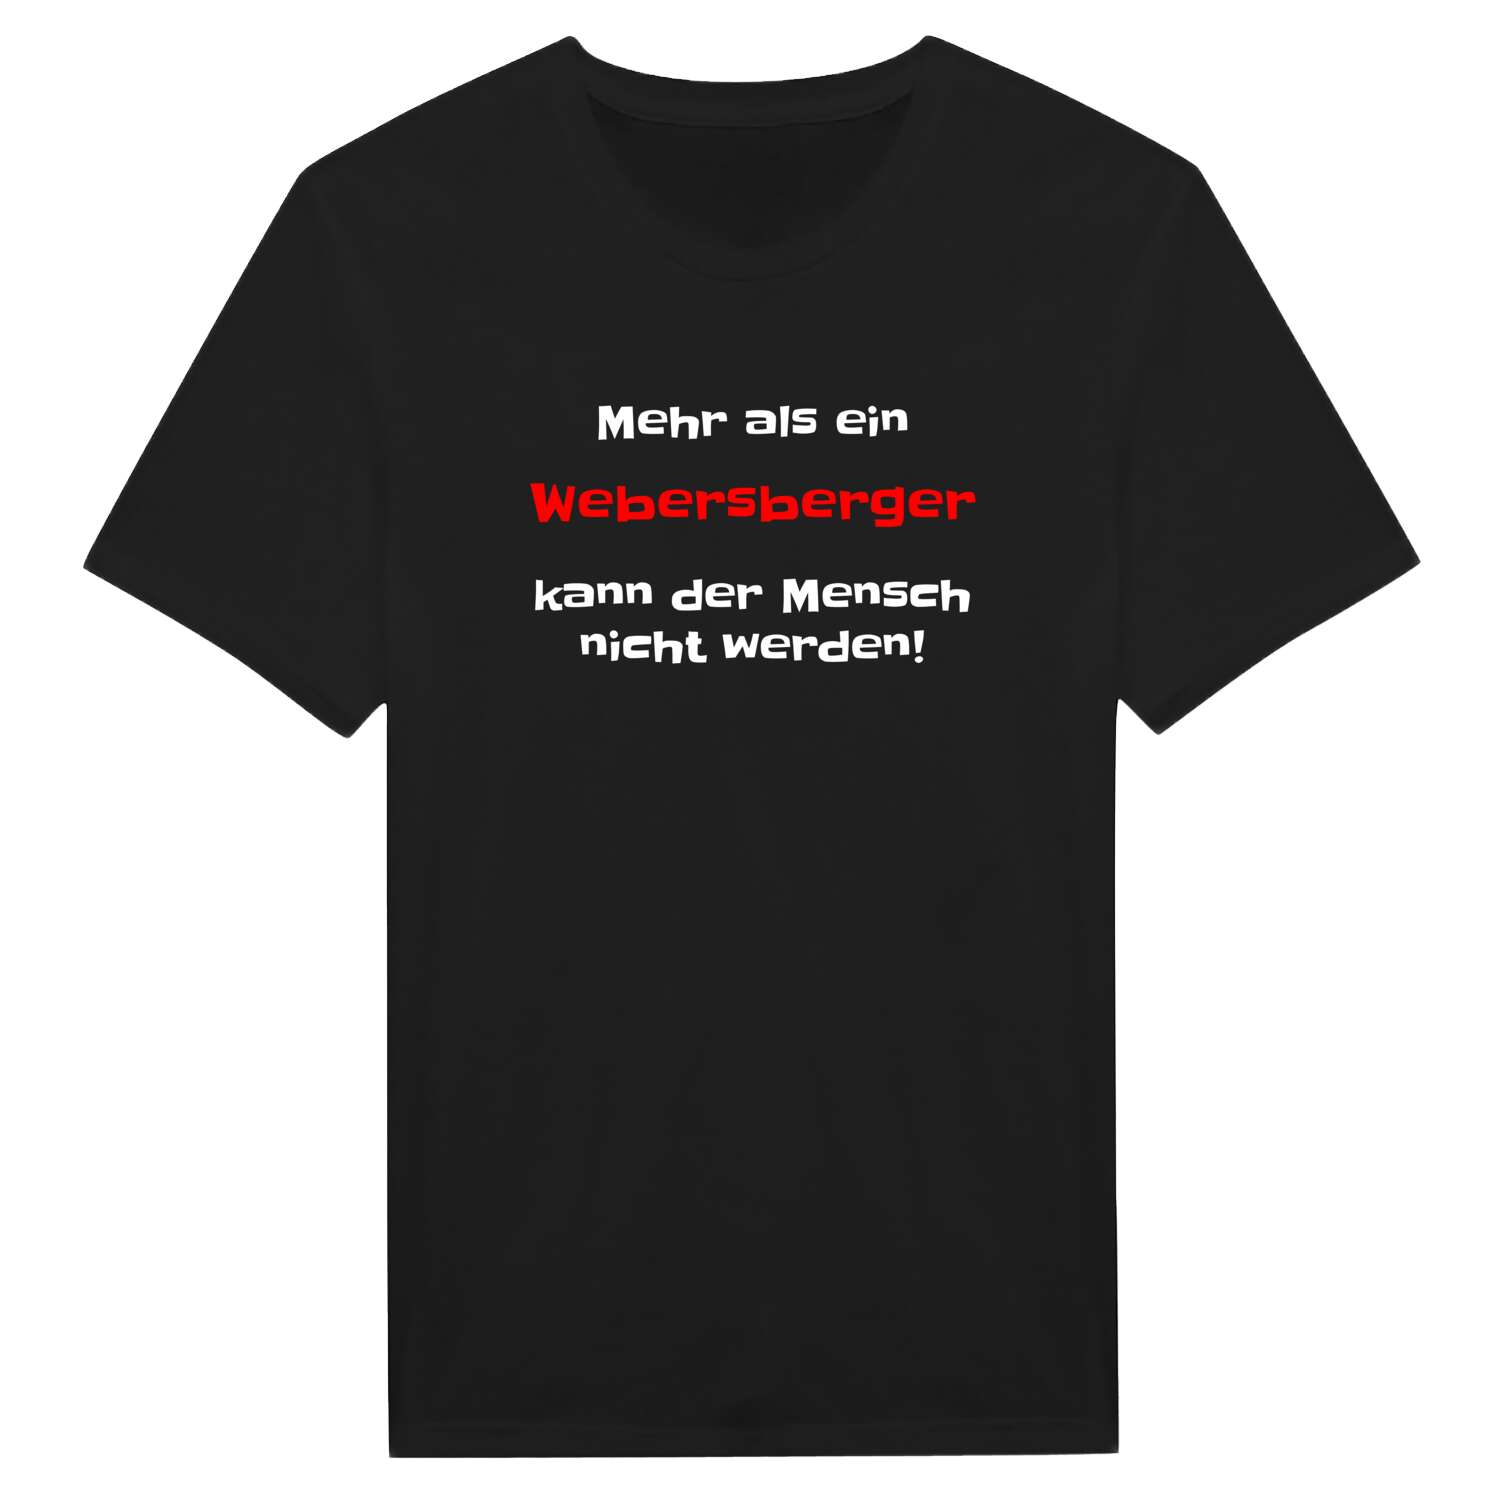 Webersberg T-Shirt »Mehr als ein«